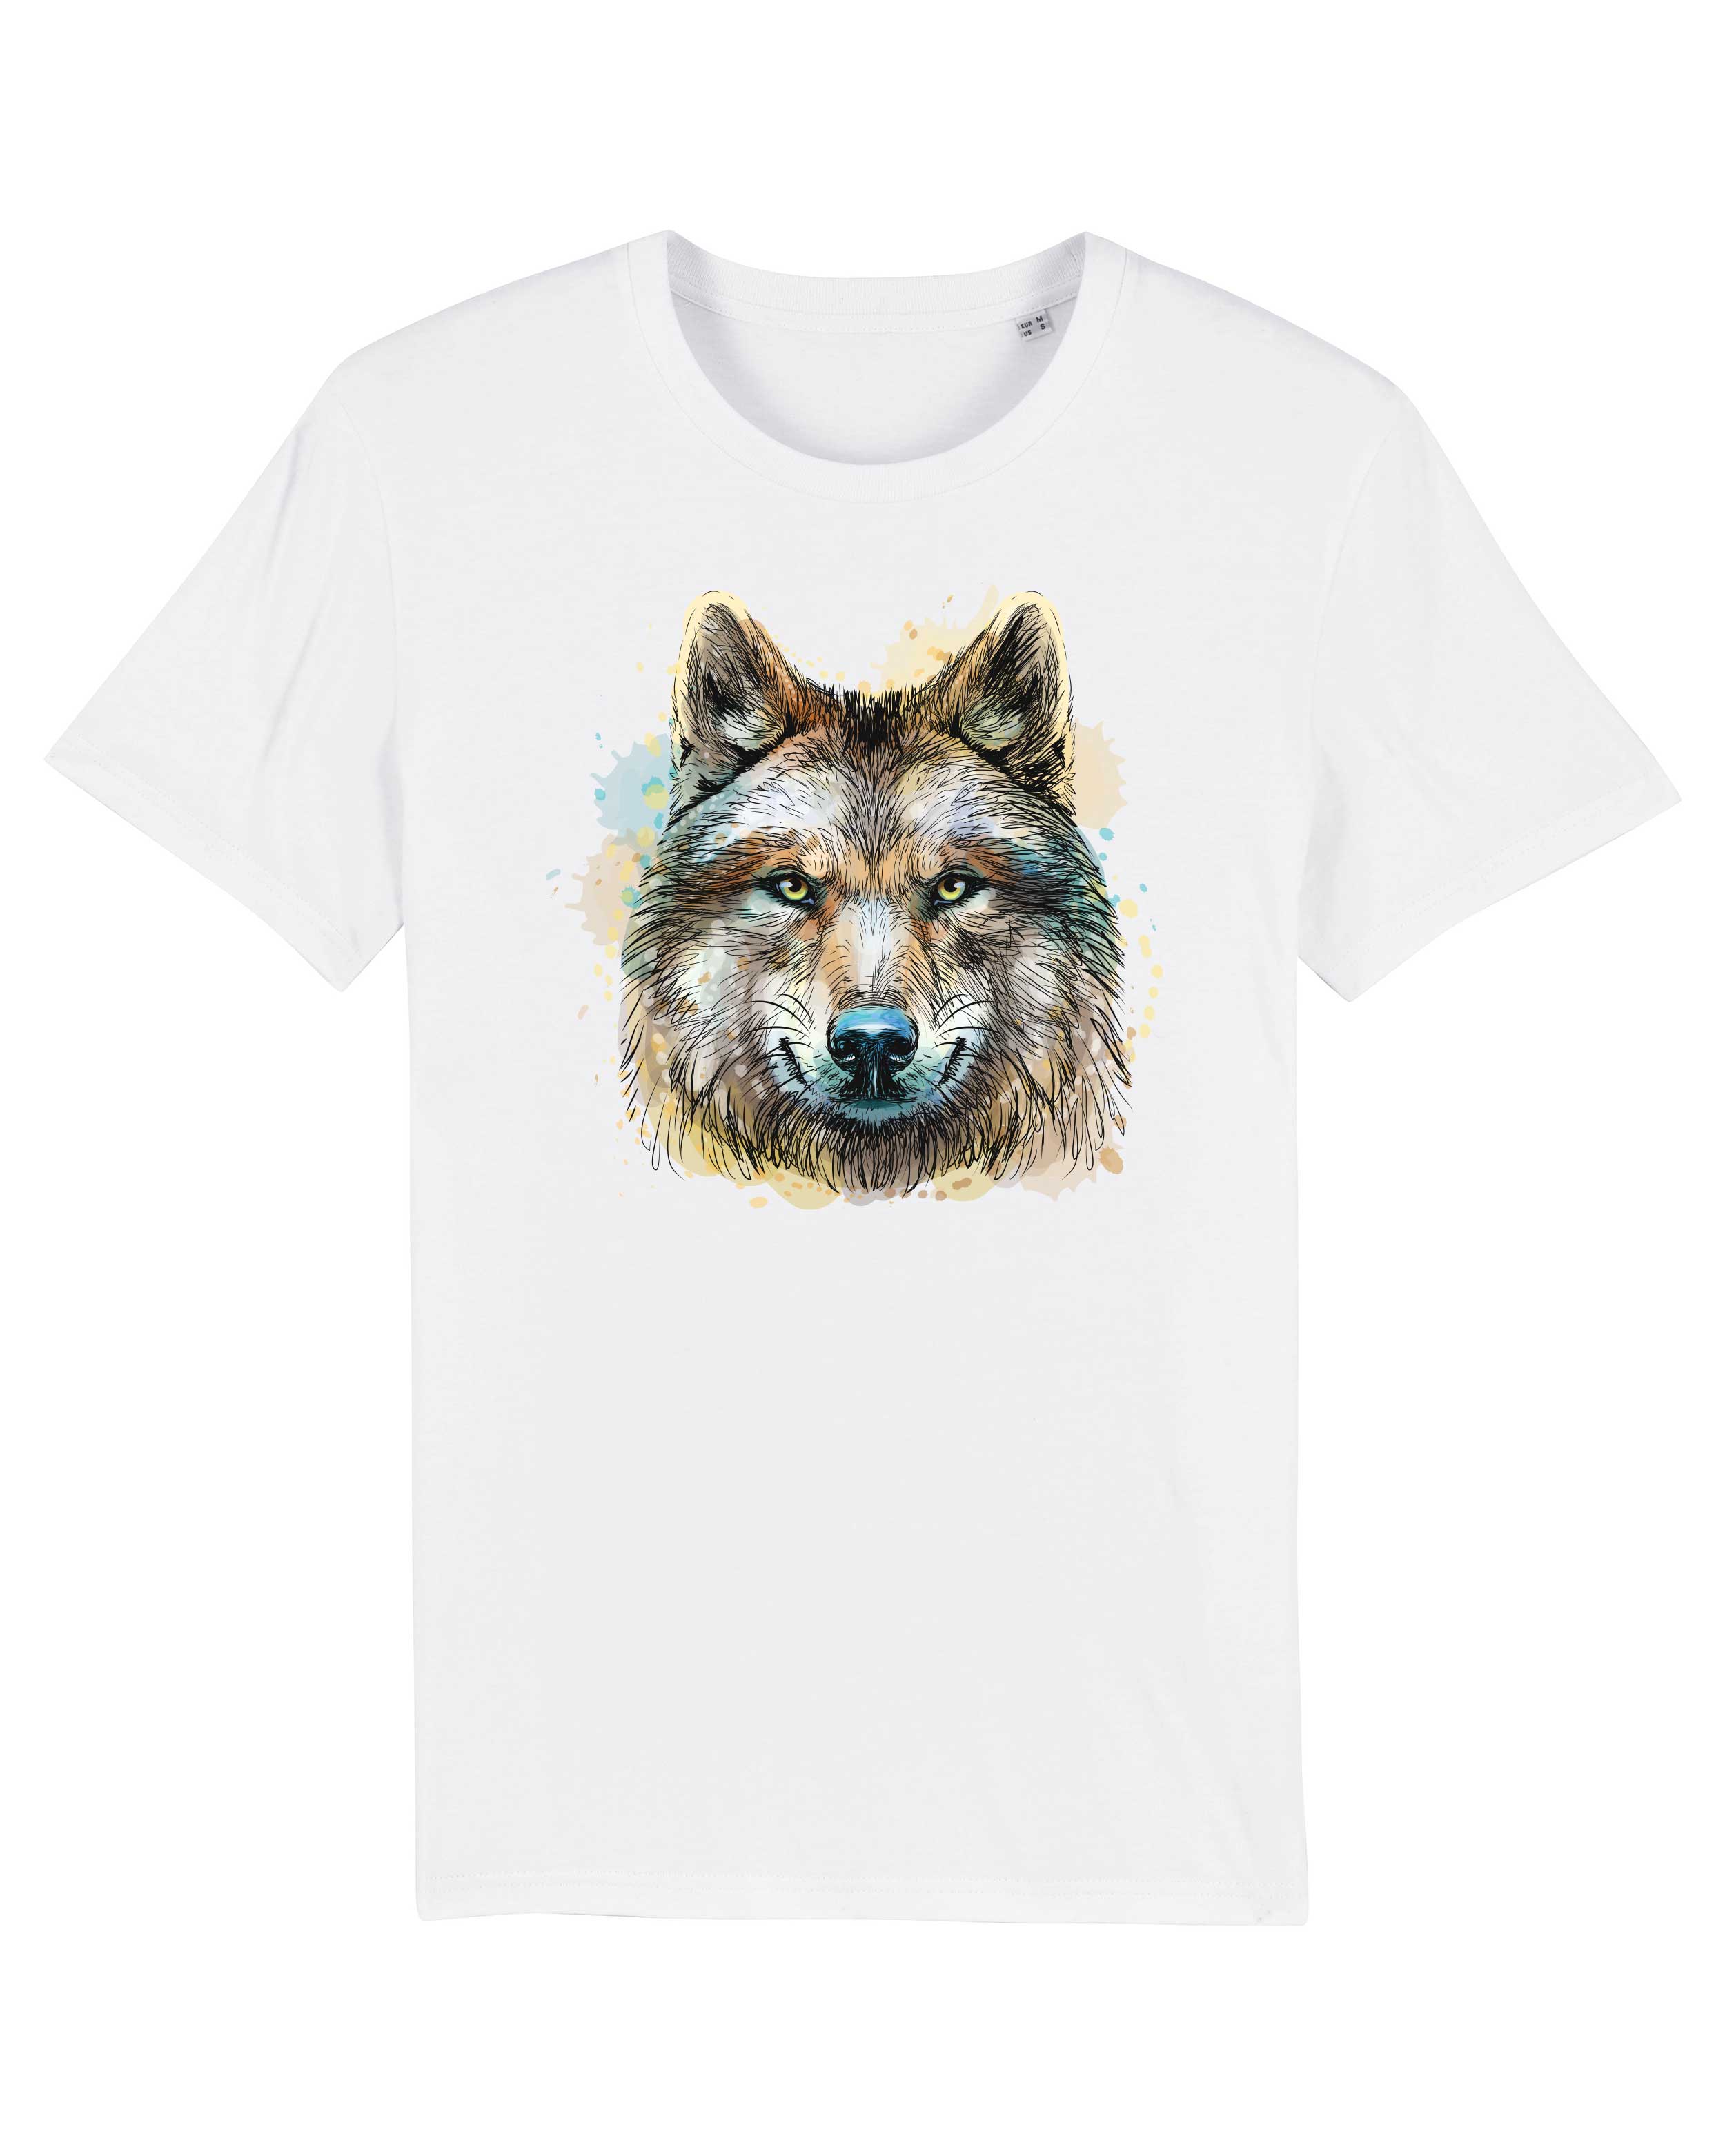 T-Shirt Wolf Illustration Tiere, Bio-Baumwolle, Unisex, Damen, Kids